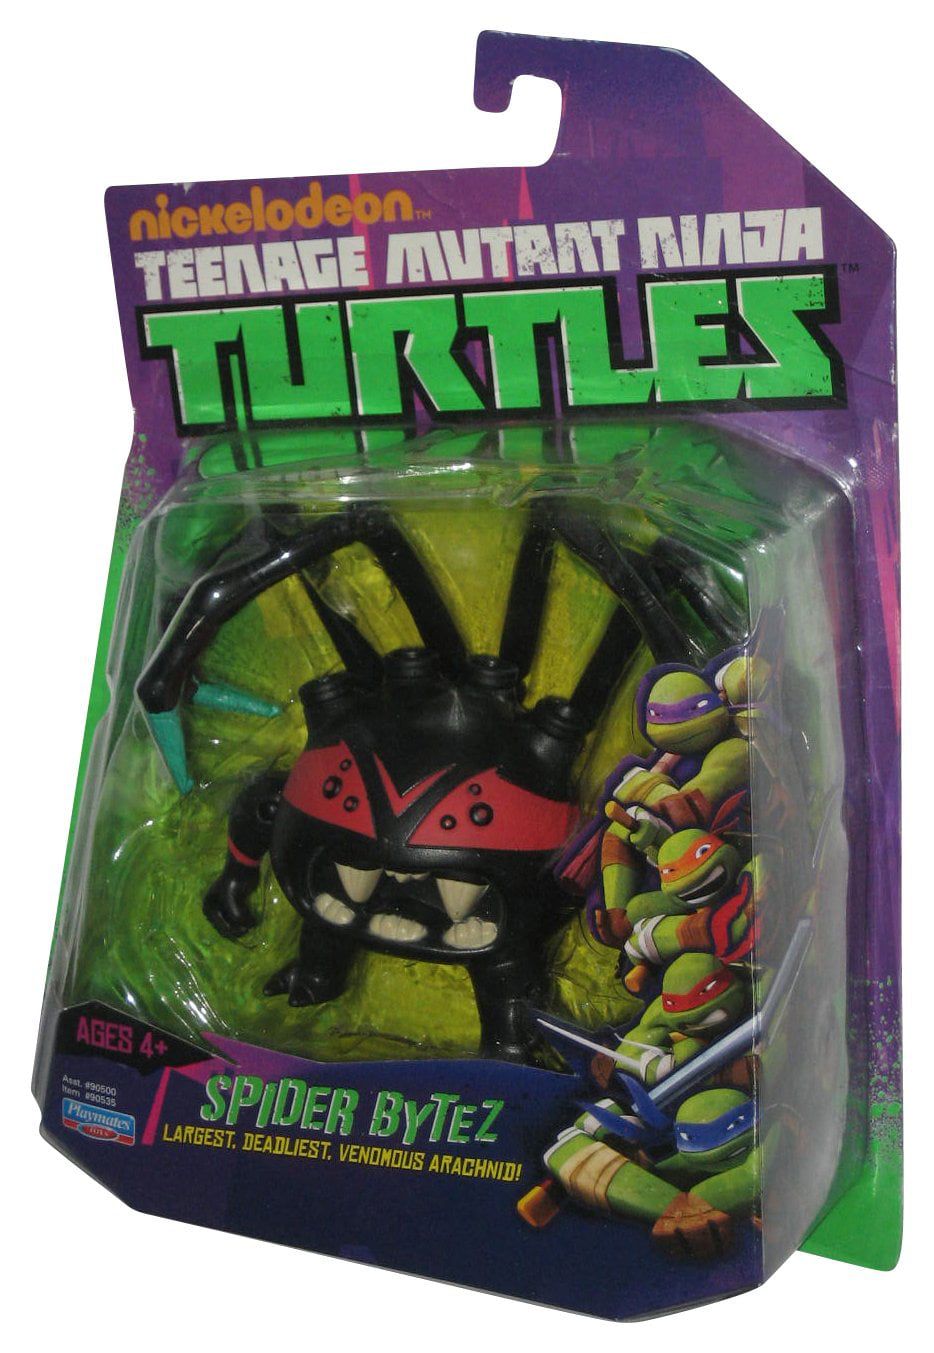 Playmates Toys Teenage Mutant Ninja Turtles Spider Bytes Action Figure for sale online 